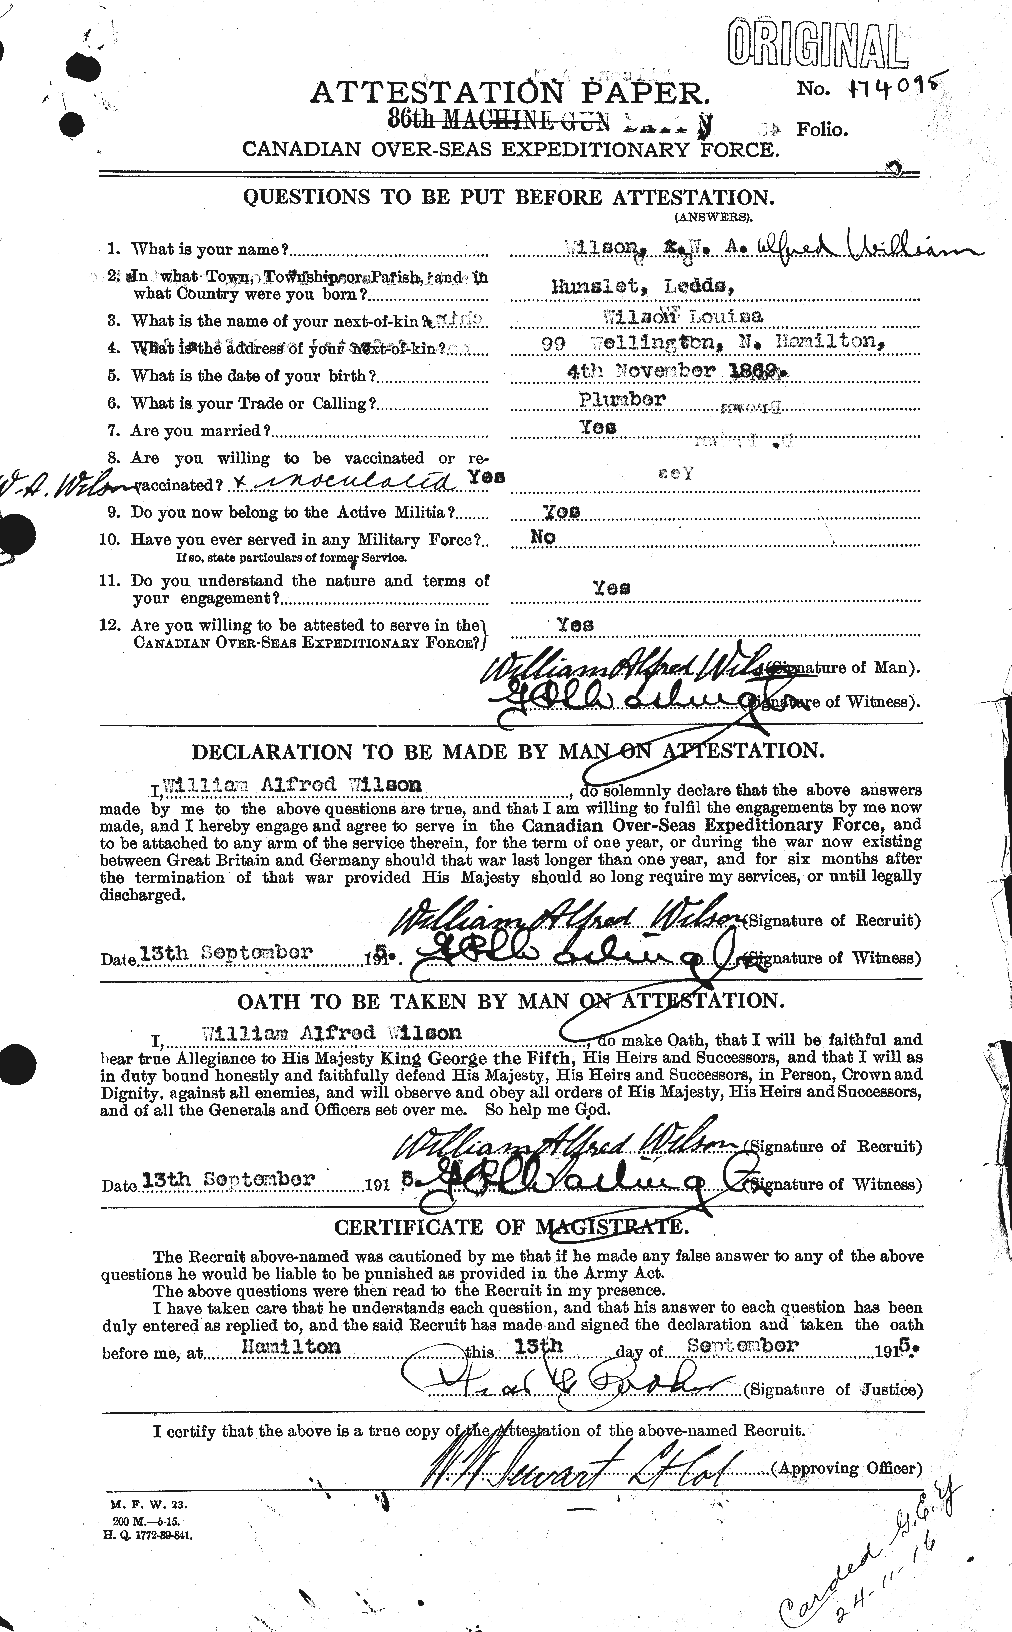 Dossiers du Personnel de la Première Guerre mondiale - CEC 681928a